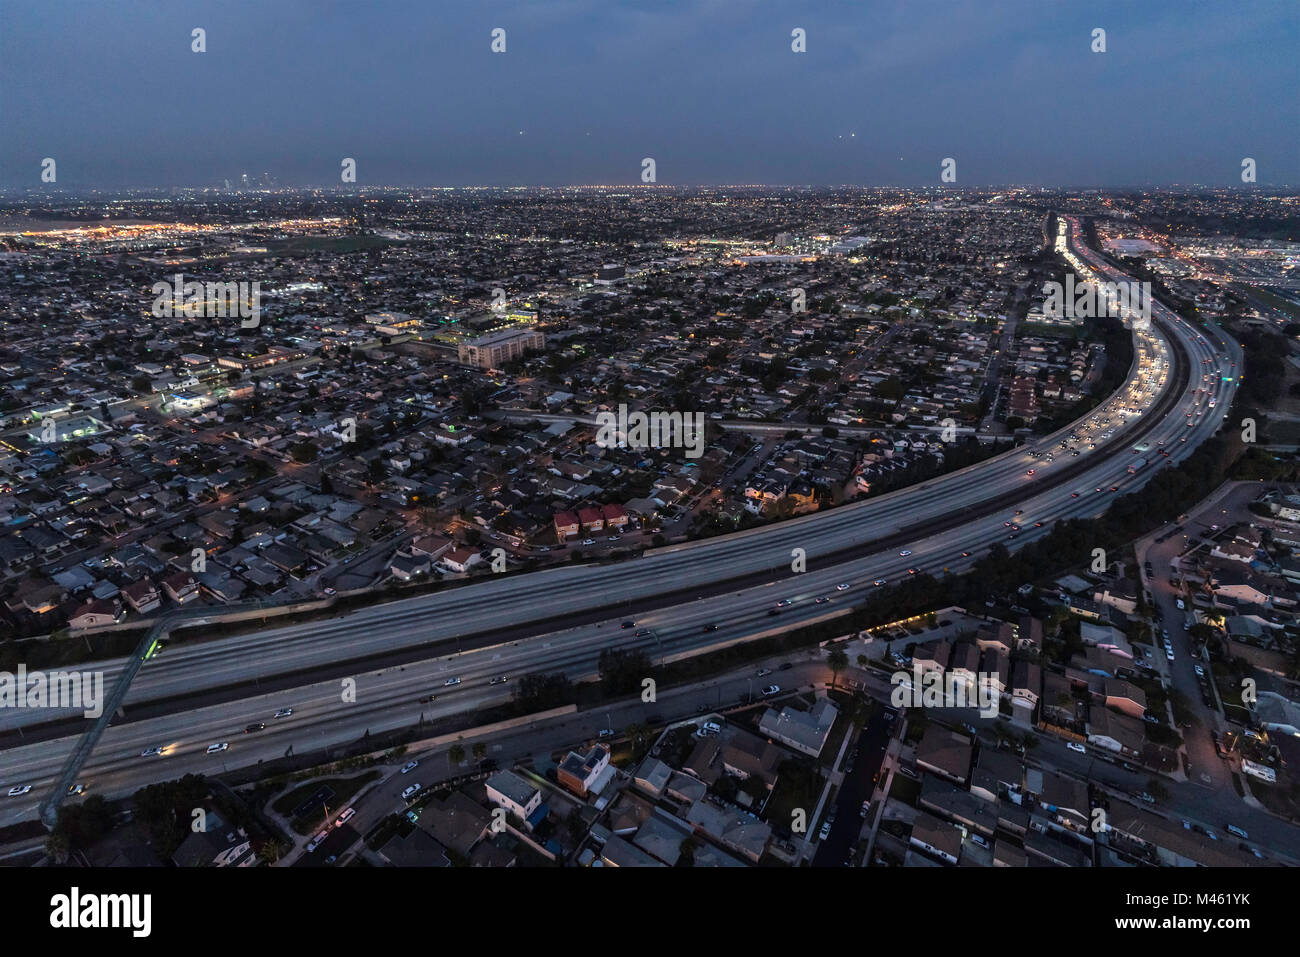 Nuit Vue aérienne de l'autoroute 105 à Los Angeles en Californie. Le trafic de matériel roulant sur les voies en direction ouest pause dans le progrès est visible. Banque D'Images